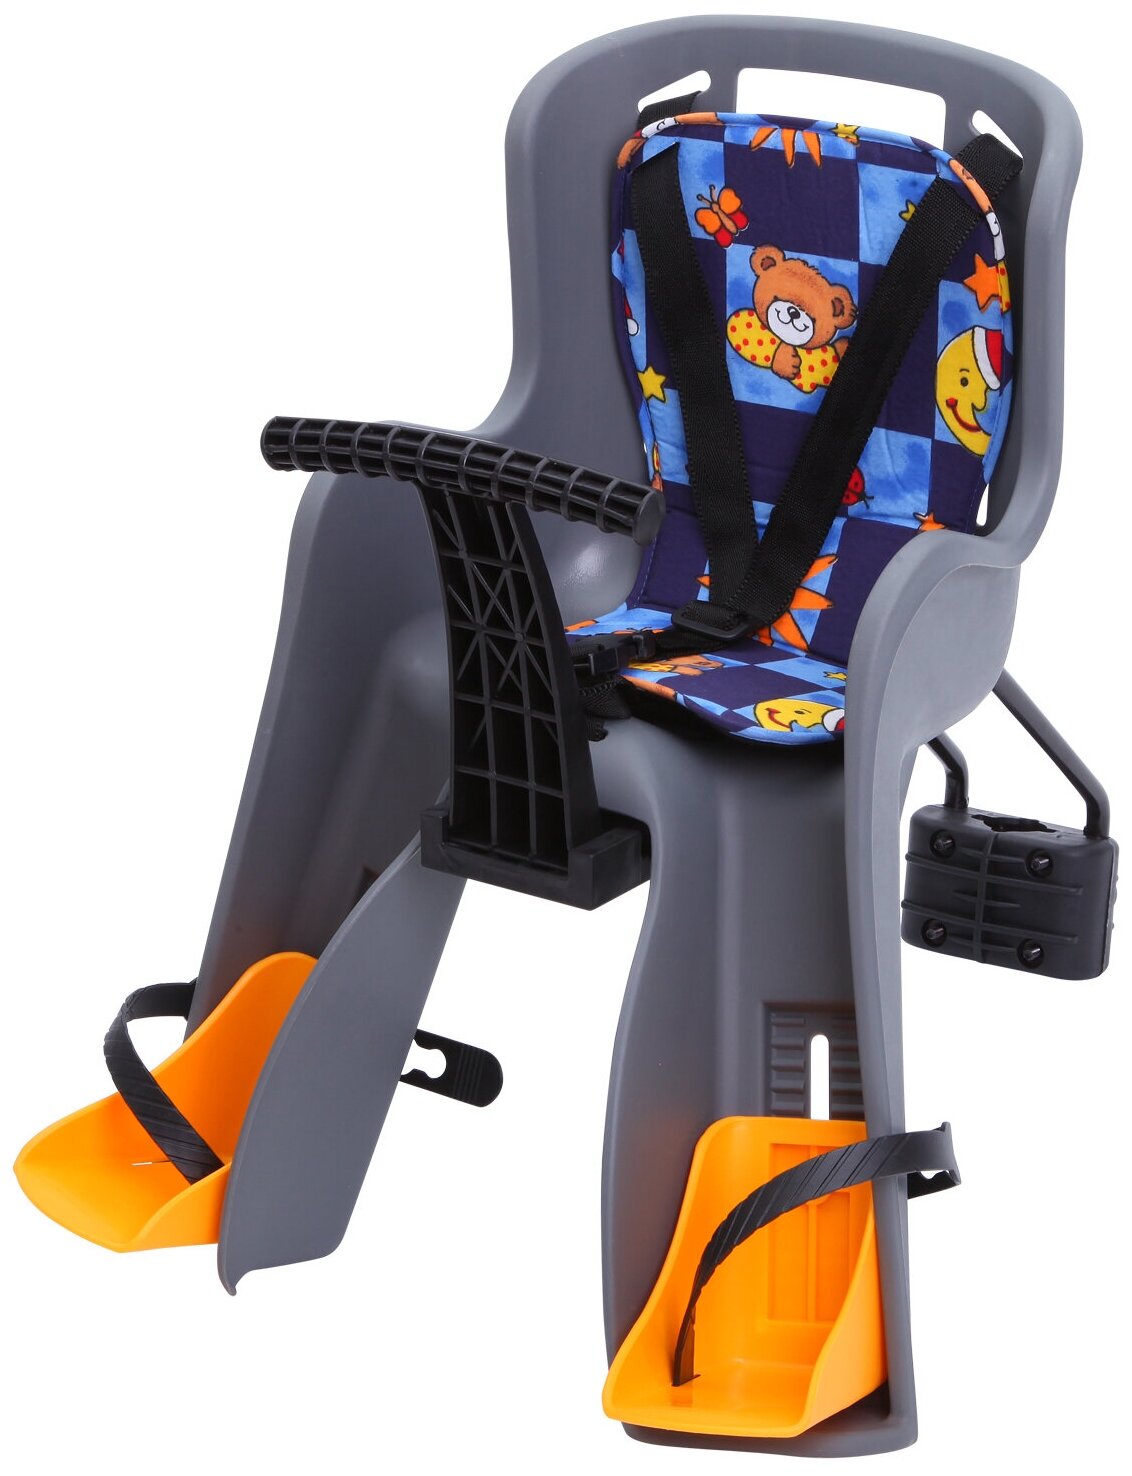 Кресло детское фронтальное Sunnywheel в цветной коробке, модель GH-908 (Кресло детское фронтальное в цветной коробке, модель GH-908)